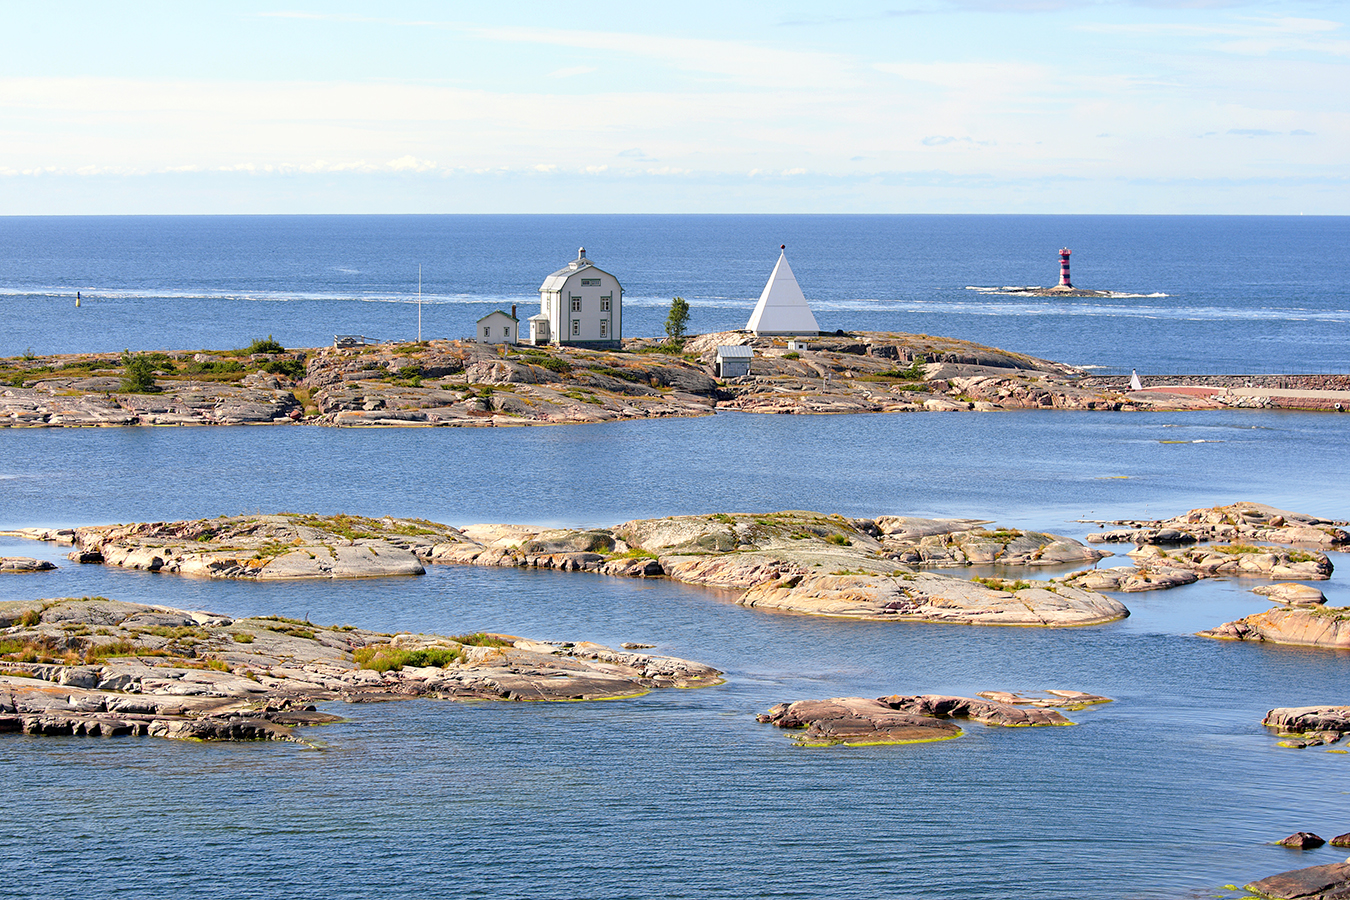 Suomalaista saaristoa: pienen saaren päällä vanha puutalo ja talon takana merimerkki.